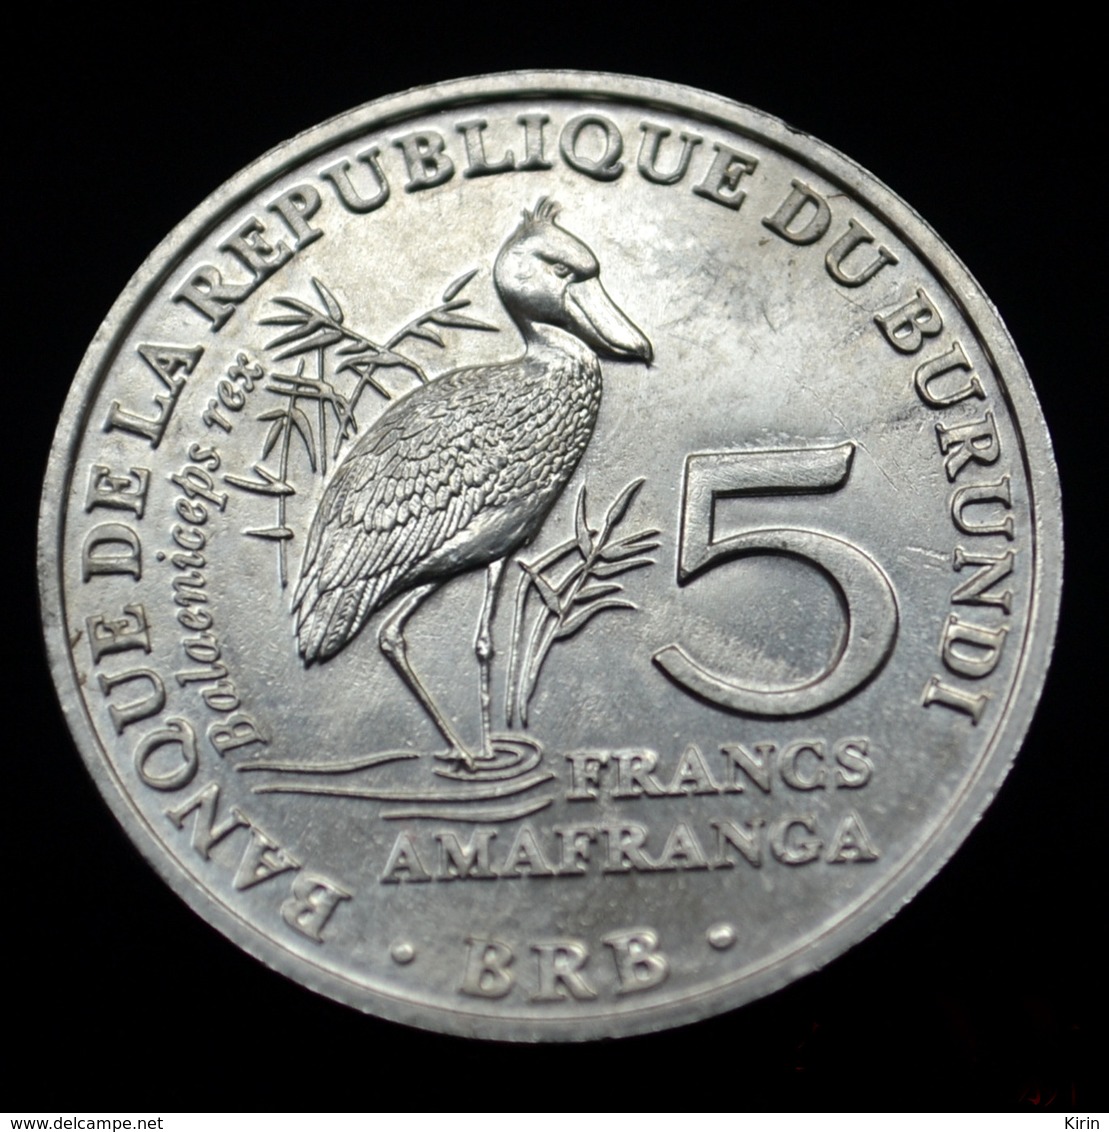 Burundi 5 Francs 2014. Km30 UNC Coin Animal Bird- Balaeniceps Rex - Burundi